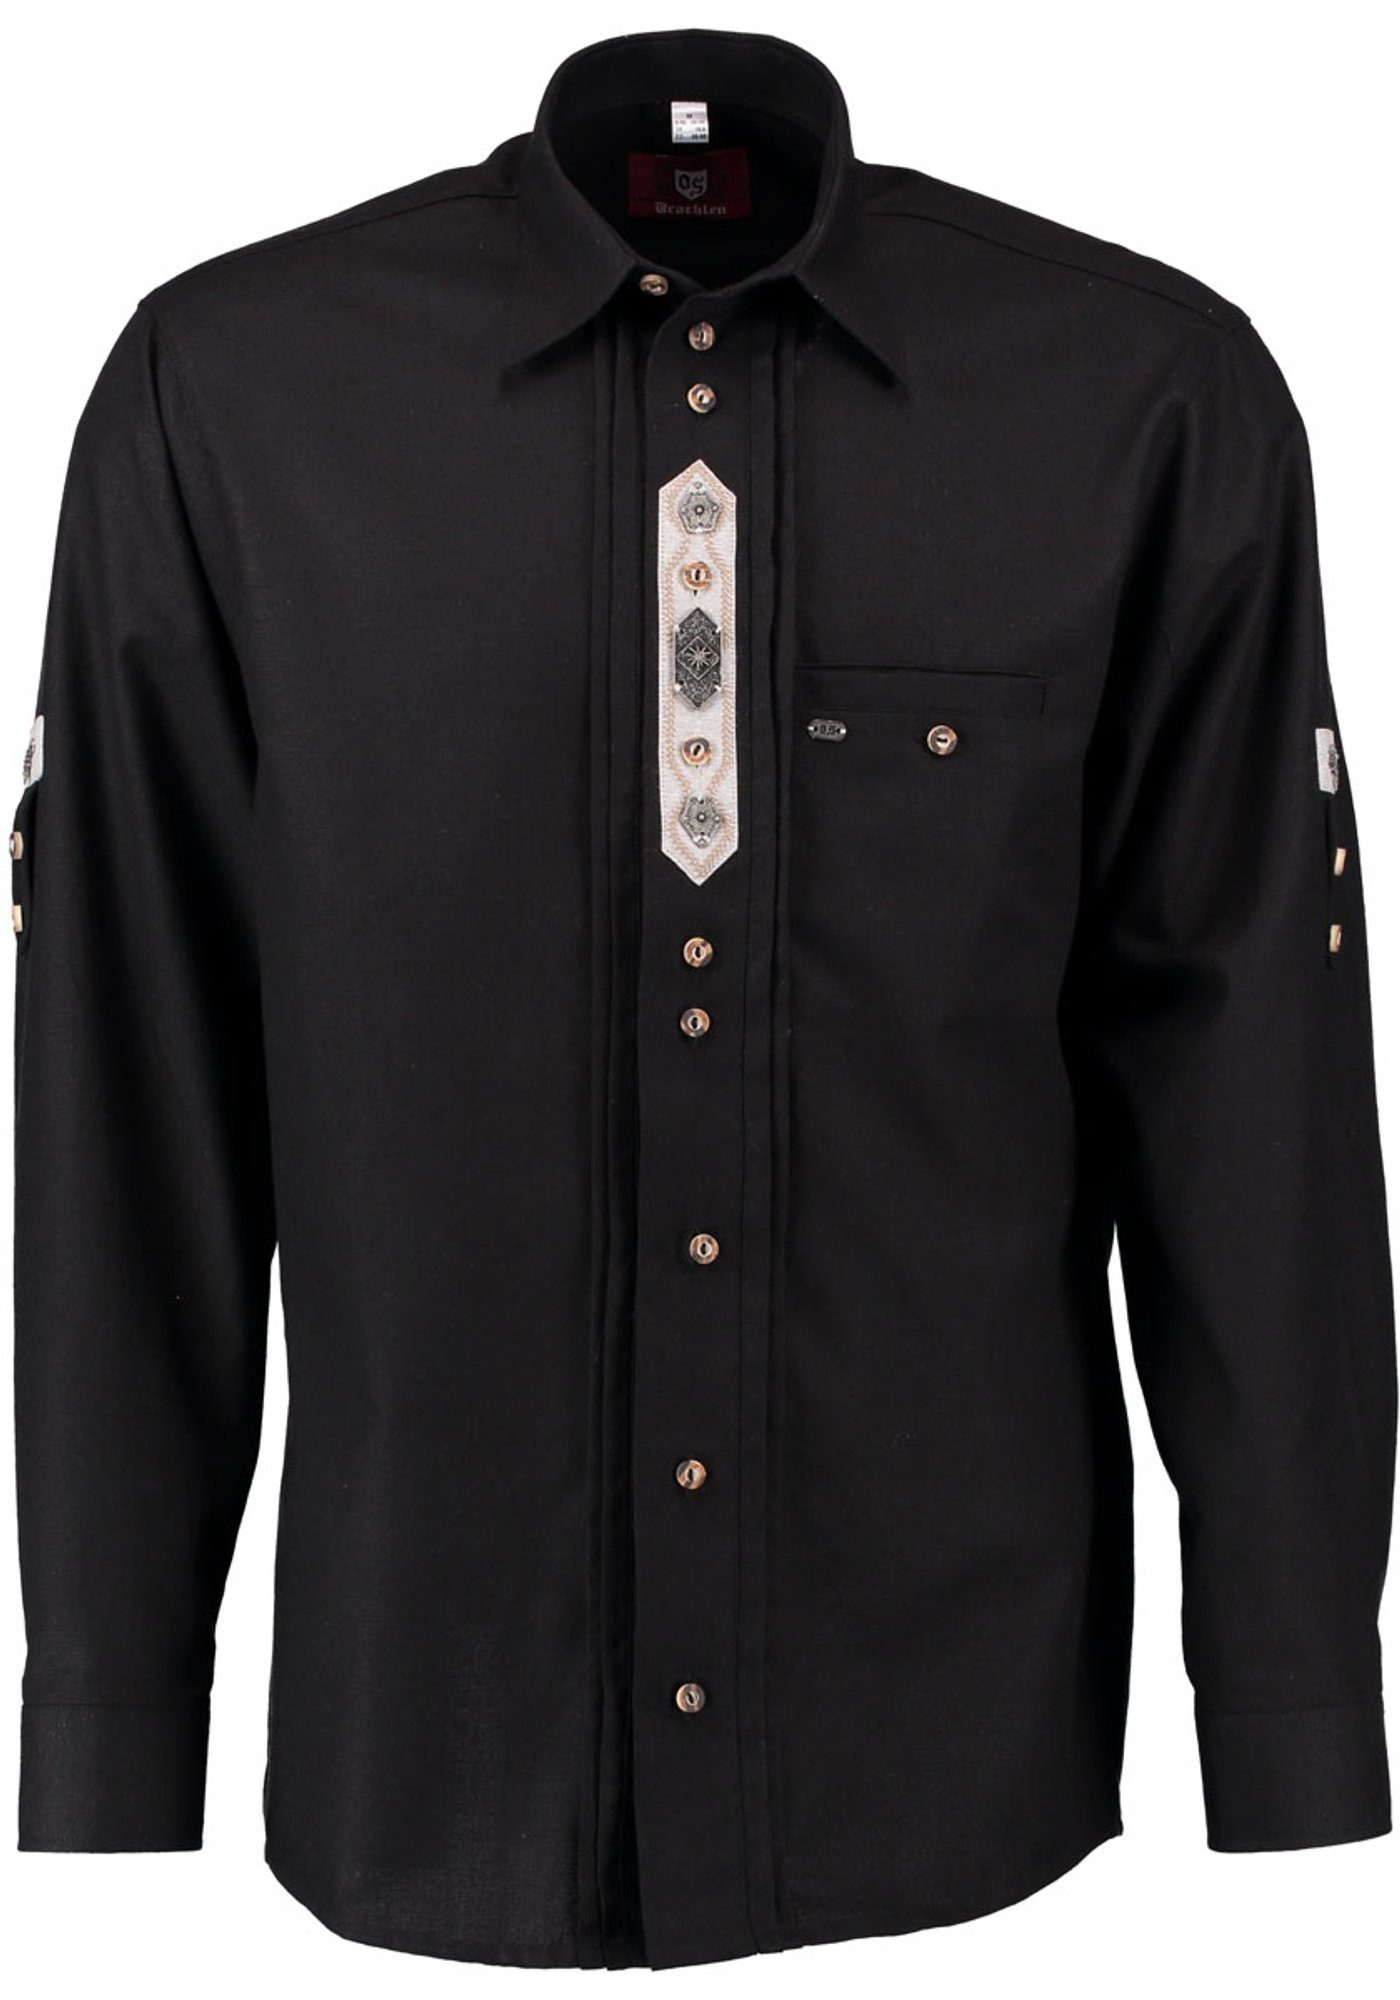 OS-Trachten Trachtenhemd Flafa Langarmhemd mit Edelweiß-Zierteil auf der Knopfleiste schwarz